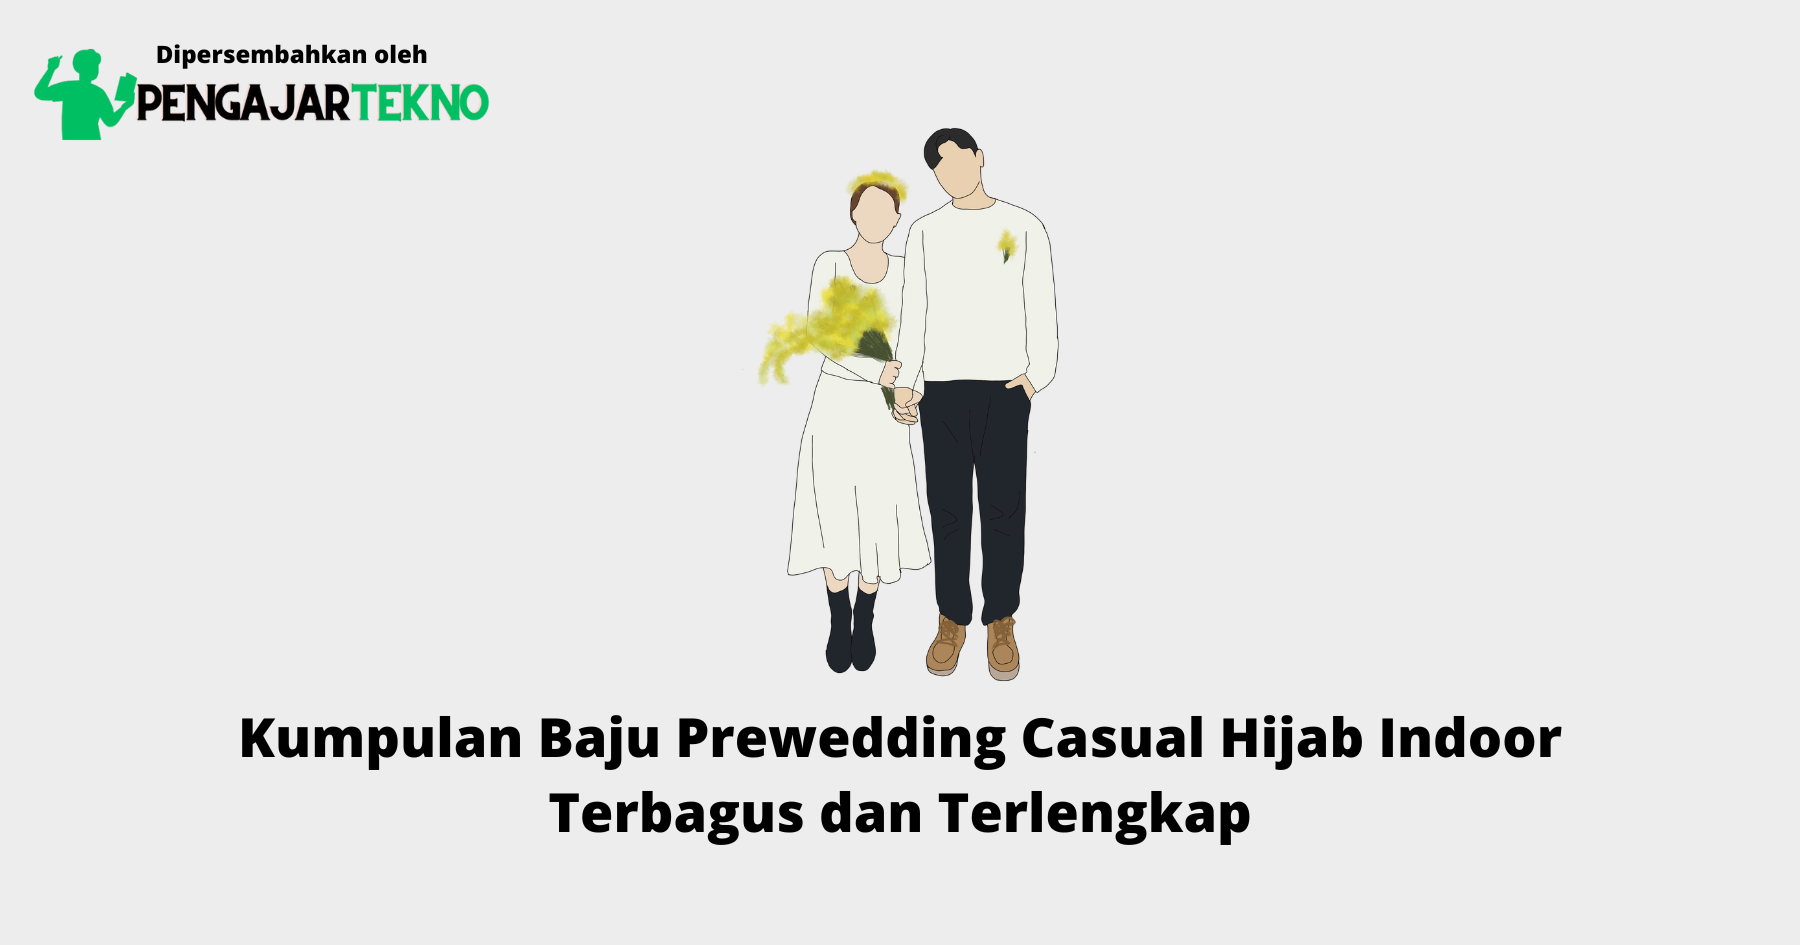 Baju Prewedding Casual Hijab Indoor